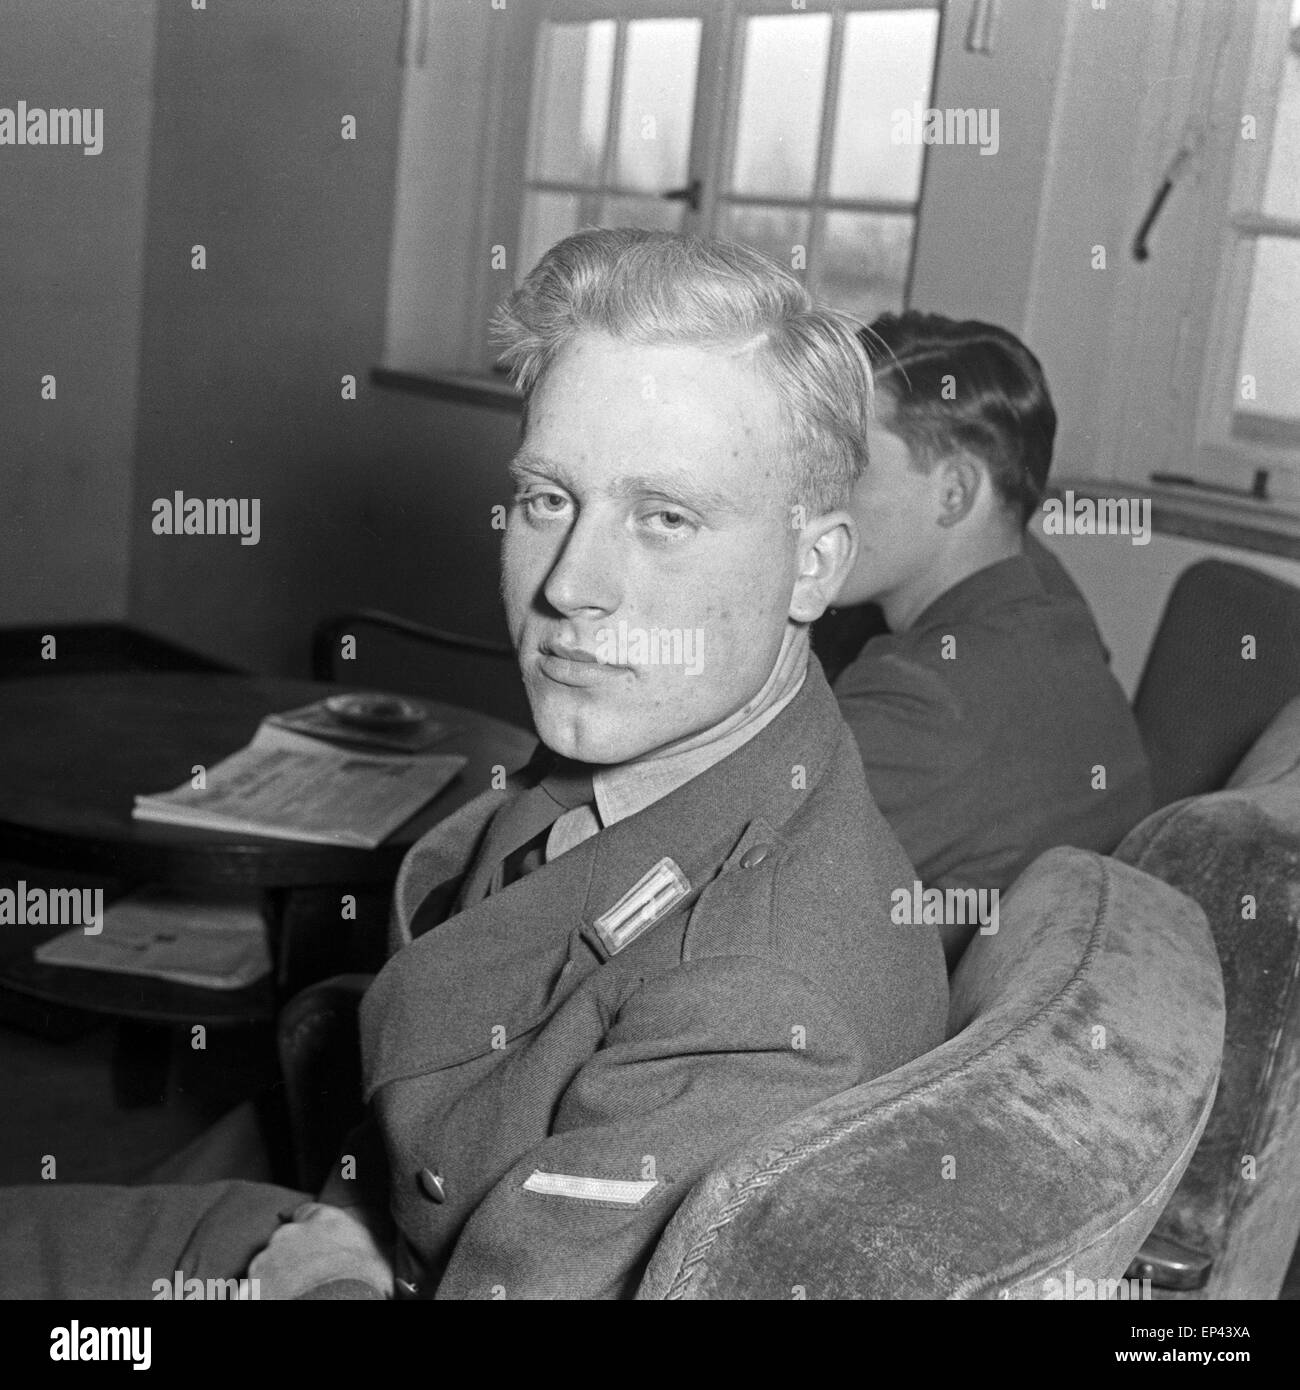 Porträt eines Soldaten im Mannschaftsdienst im Rang eines Gefreiten der Bundeswehr, Deutschland 1950er Jahre. Portrait of a sold Stock Photo